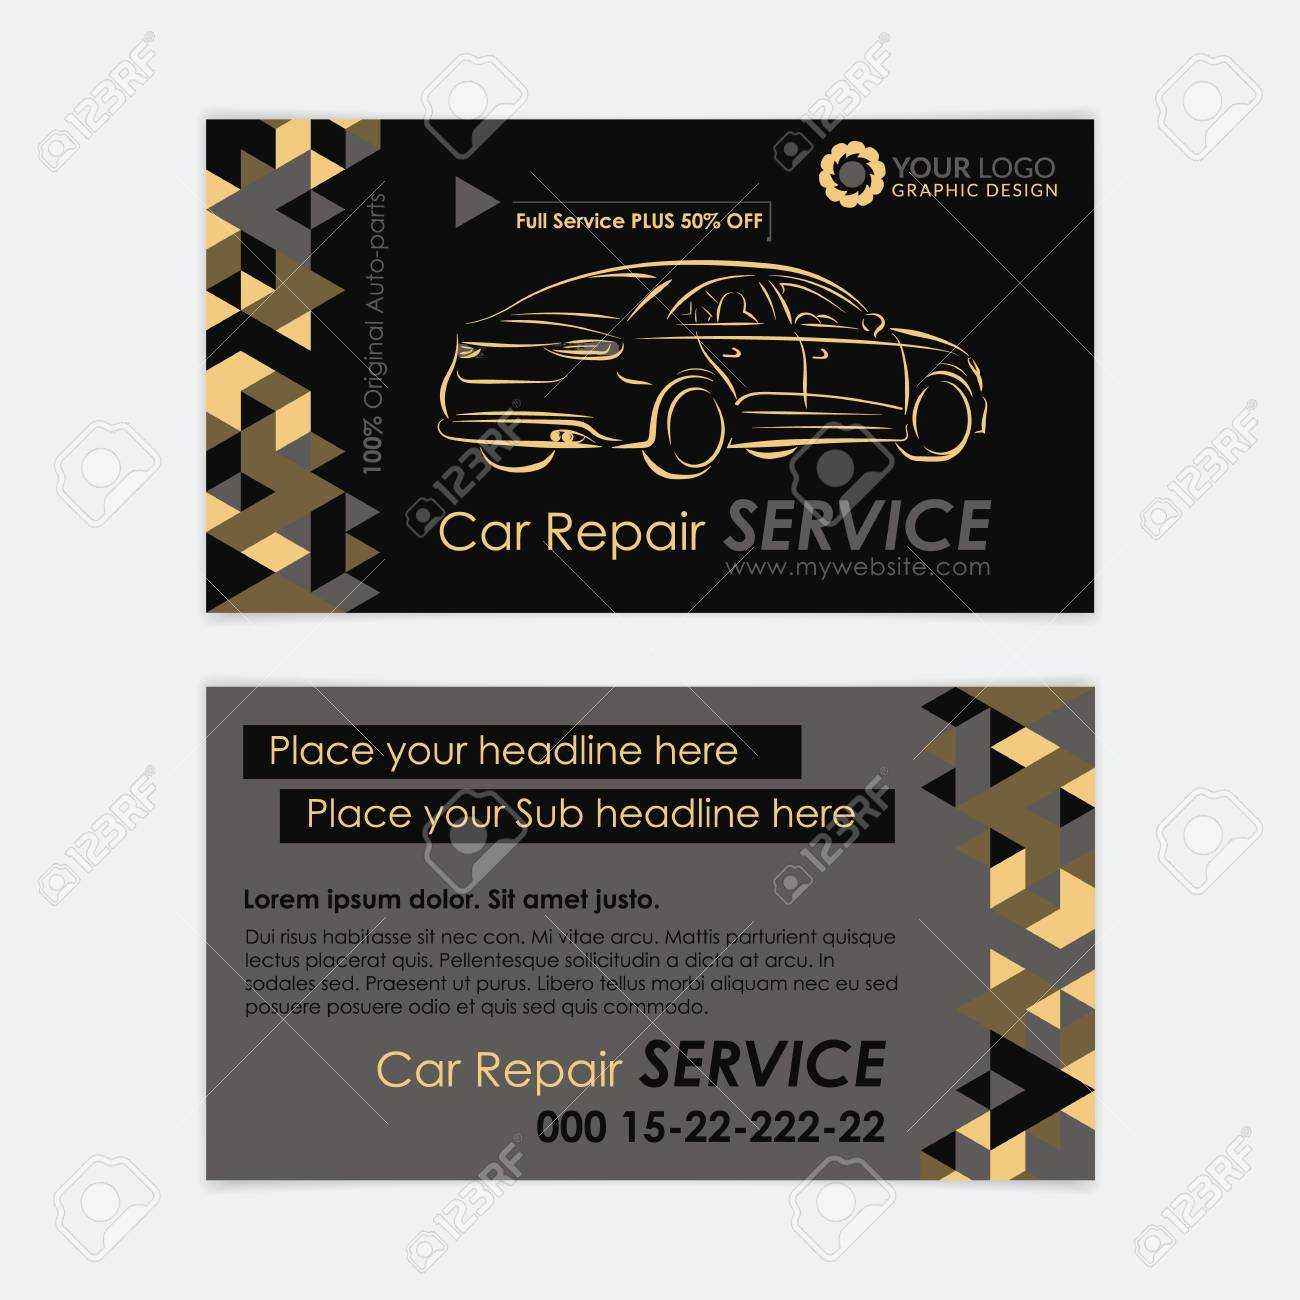 Automotive Service Business Card Template. Car Diagnostics And.. Regarding Automotive Business Card Templates